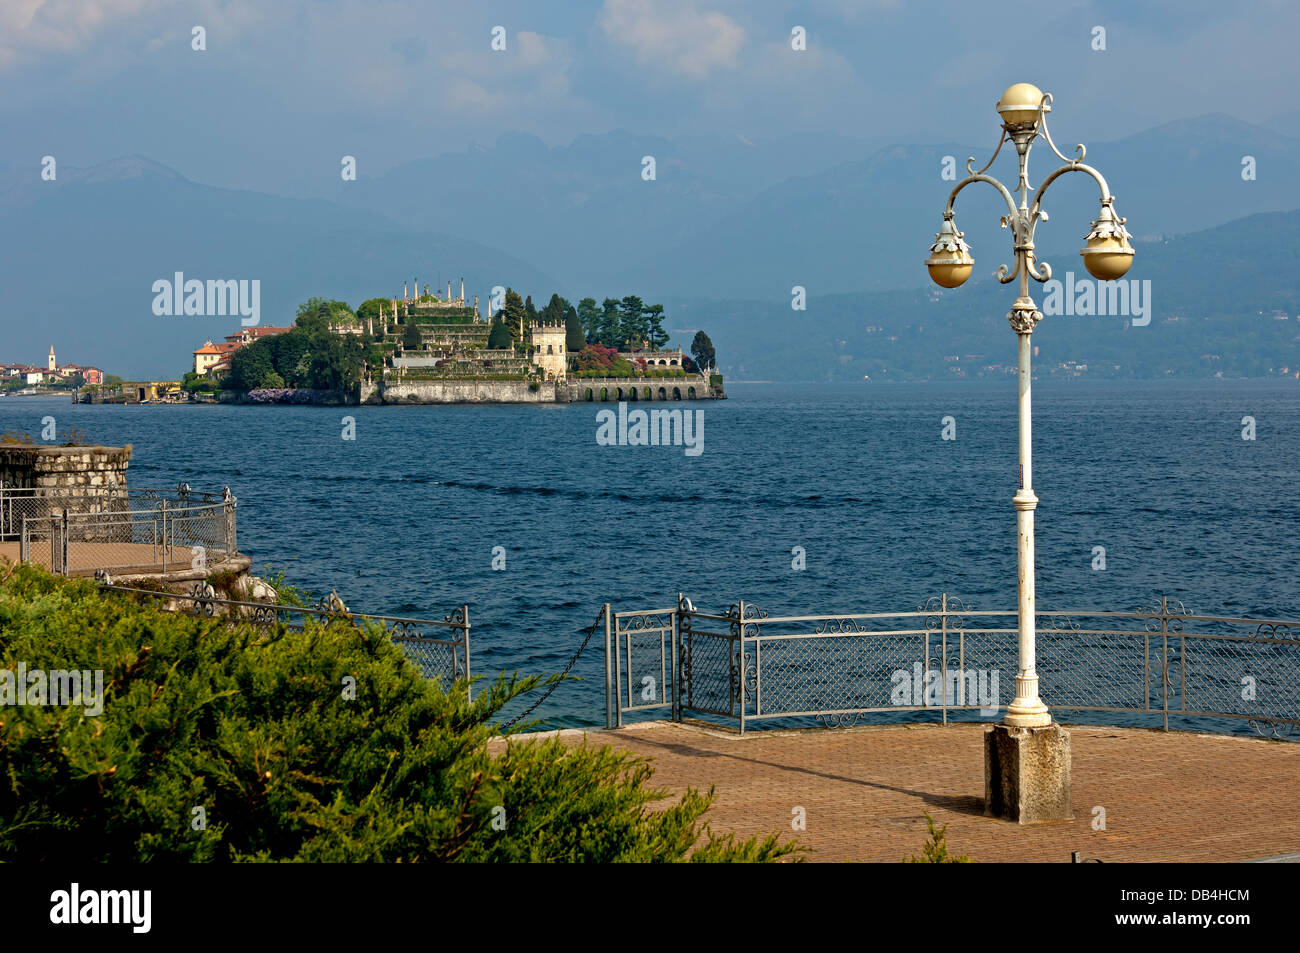 Isola Bella island, Borromean Islands, Stresa, Lago Maggiore lake, Piedmont, Italy Stock Photo